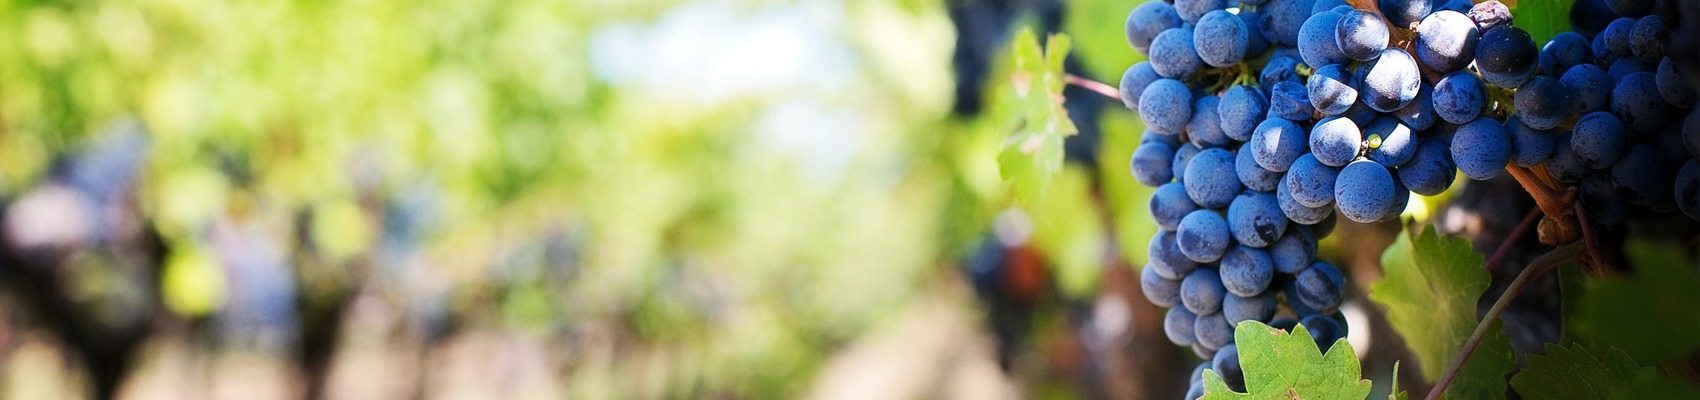 EuroCave | Wijn in de horeca wijnkasten wijnrekken wijnkoeling